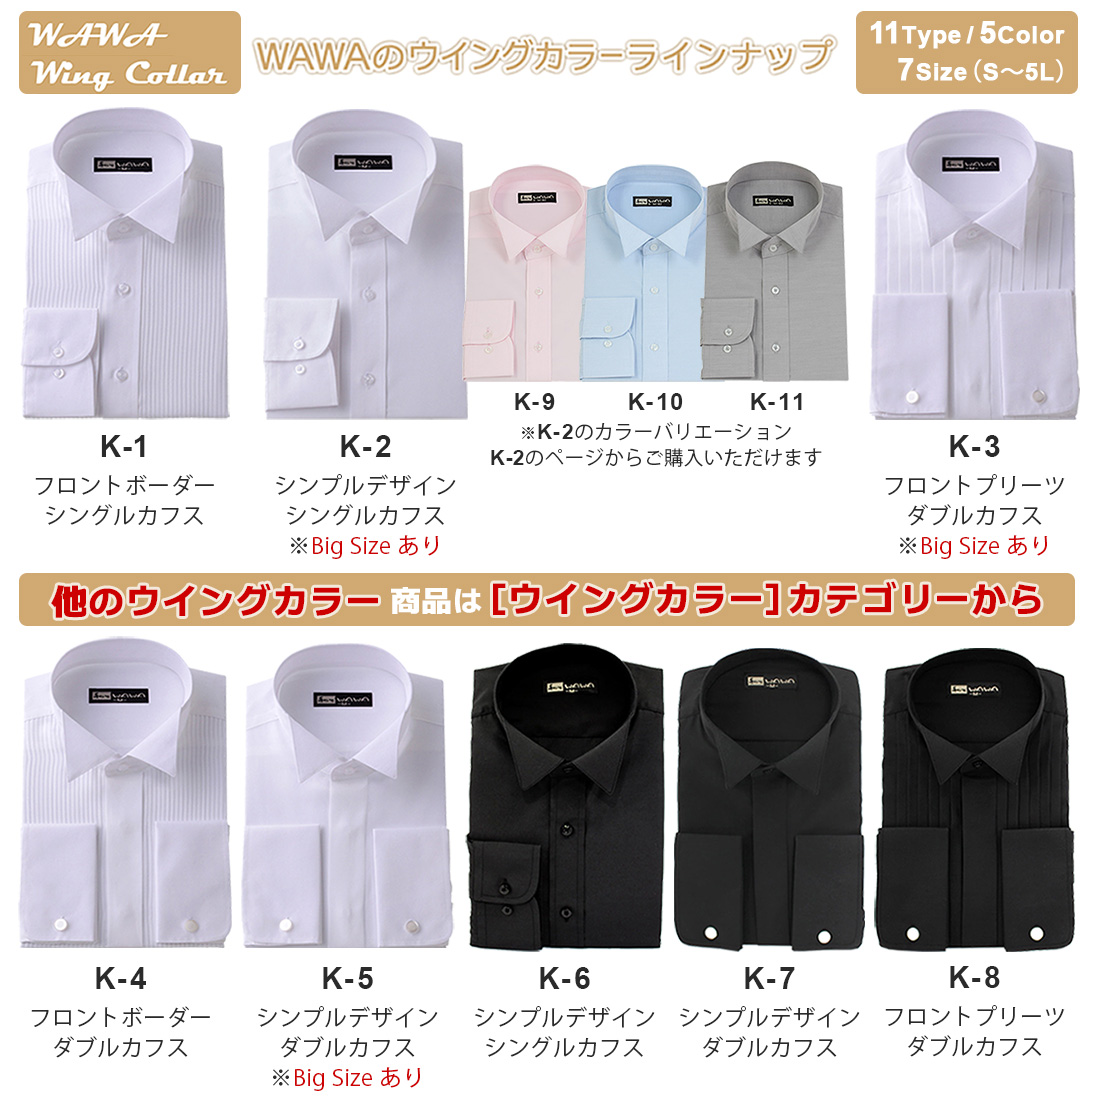 ウイングカラーシャツ K-7 フォーマル ブライダル シャツ ワイシャツ 結婚式 モーニング バーテンダー タキシードドレス 黒 ブラック